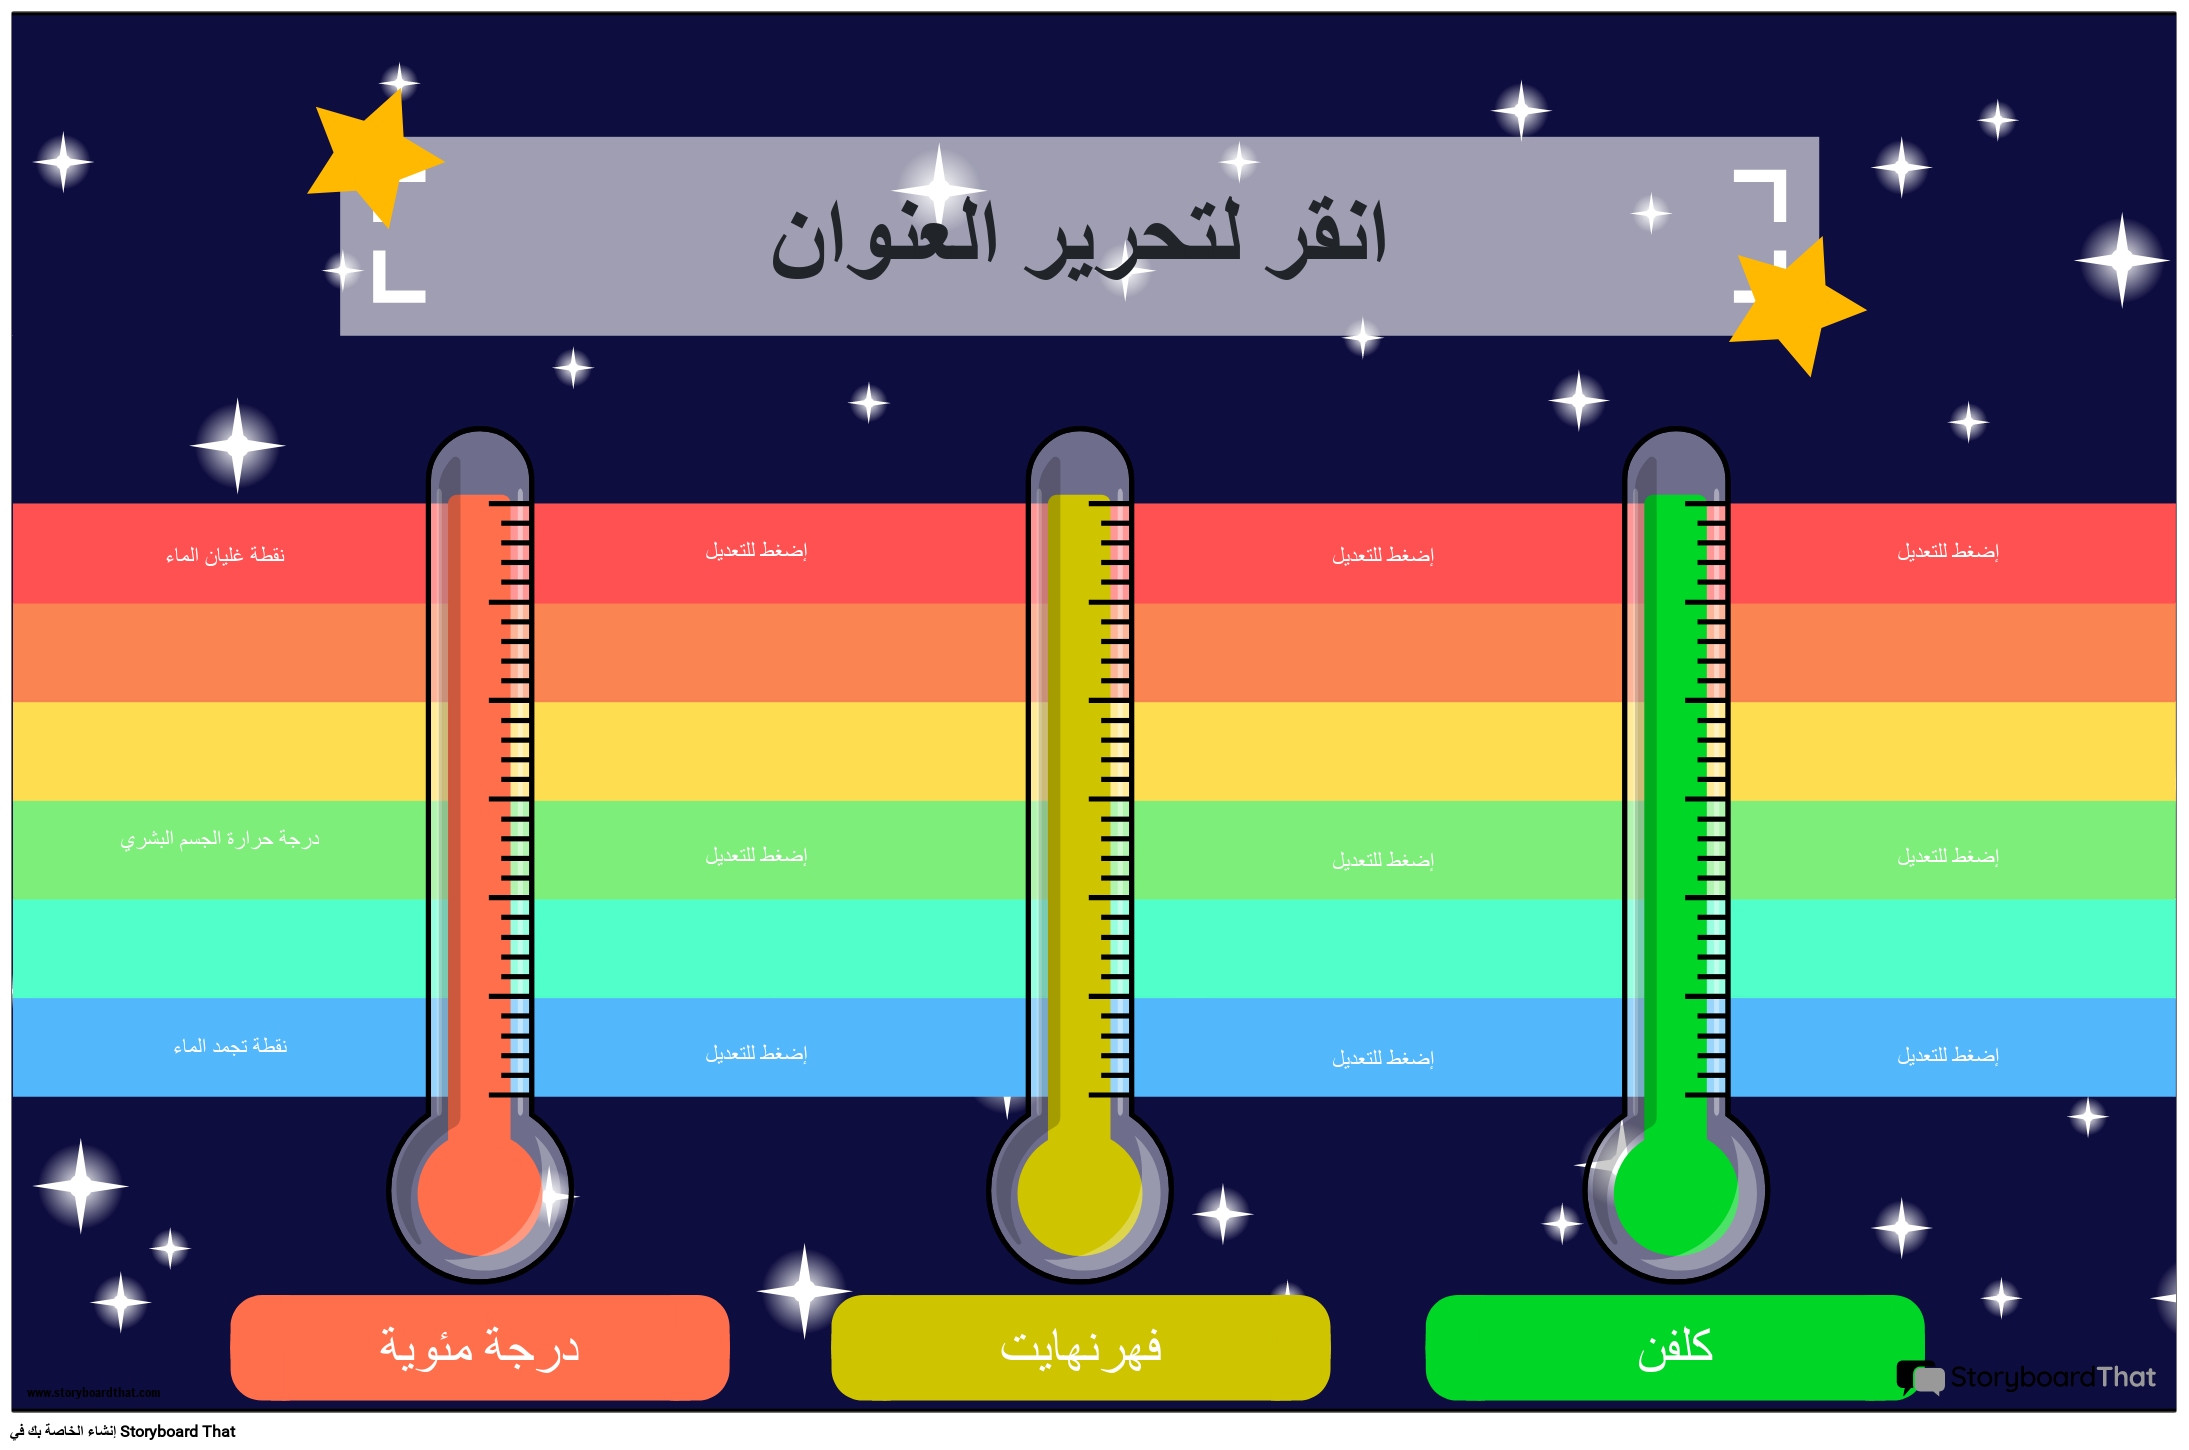 وحدات درجة الحرارة في ملصق مقارنة القياس مع النجوم وقوس قزح T